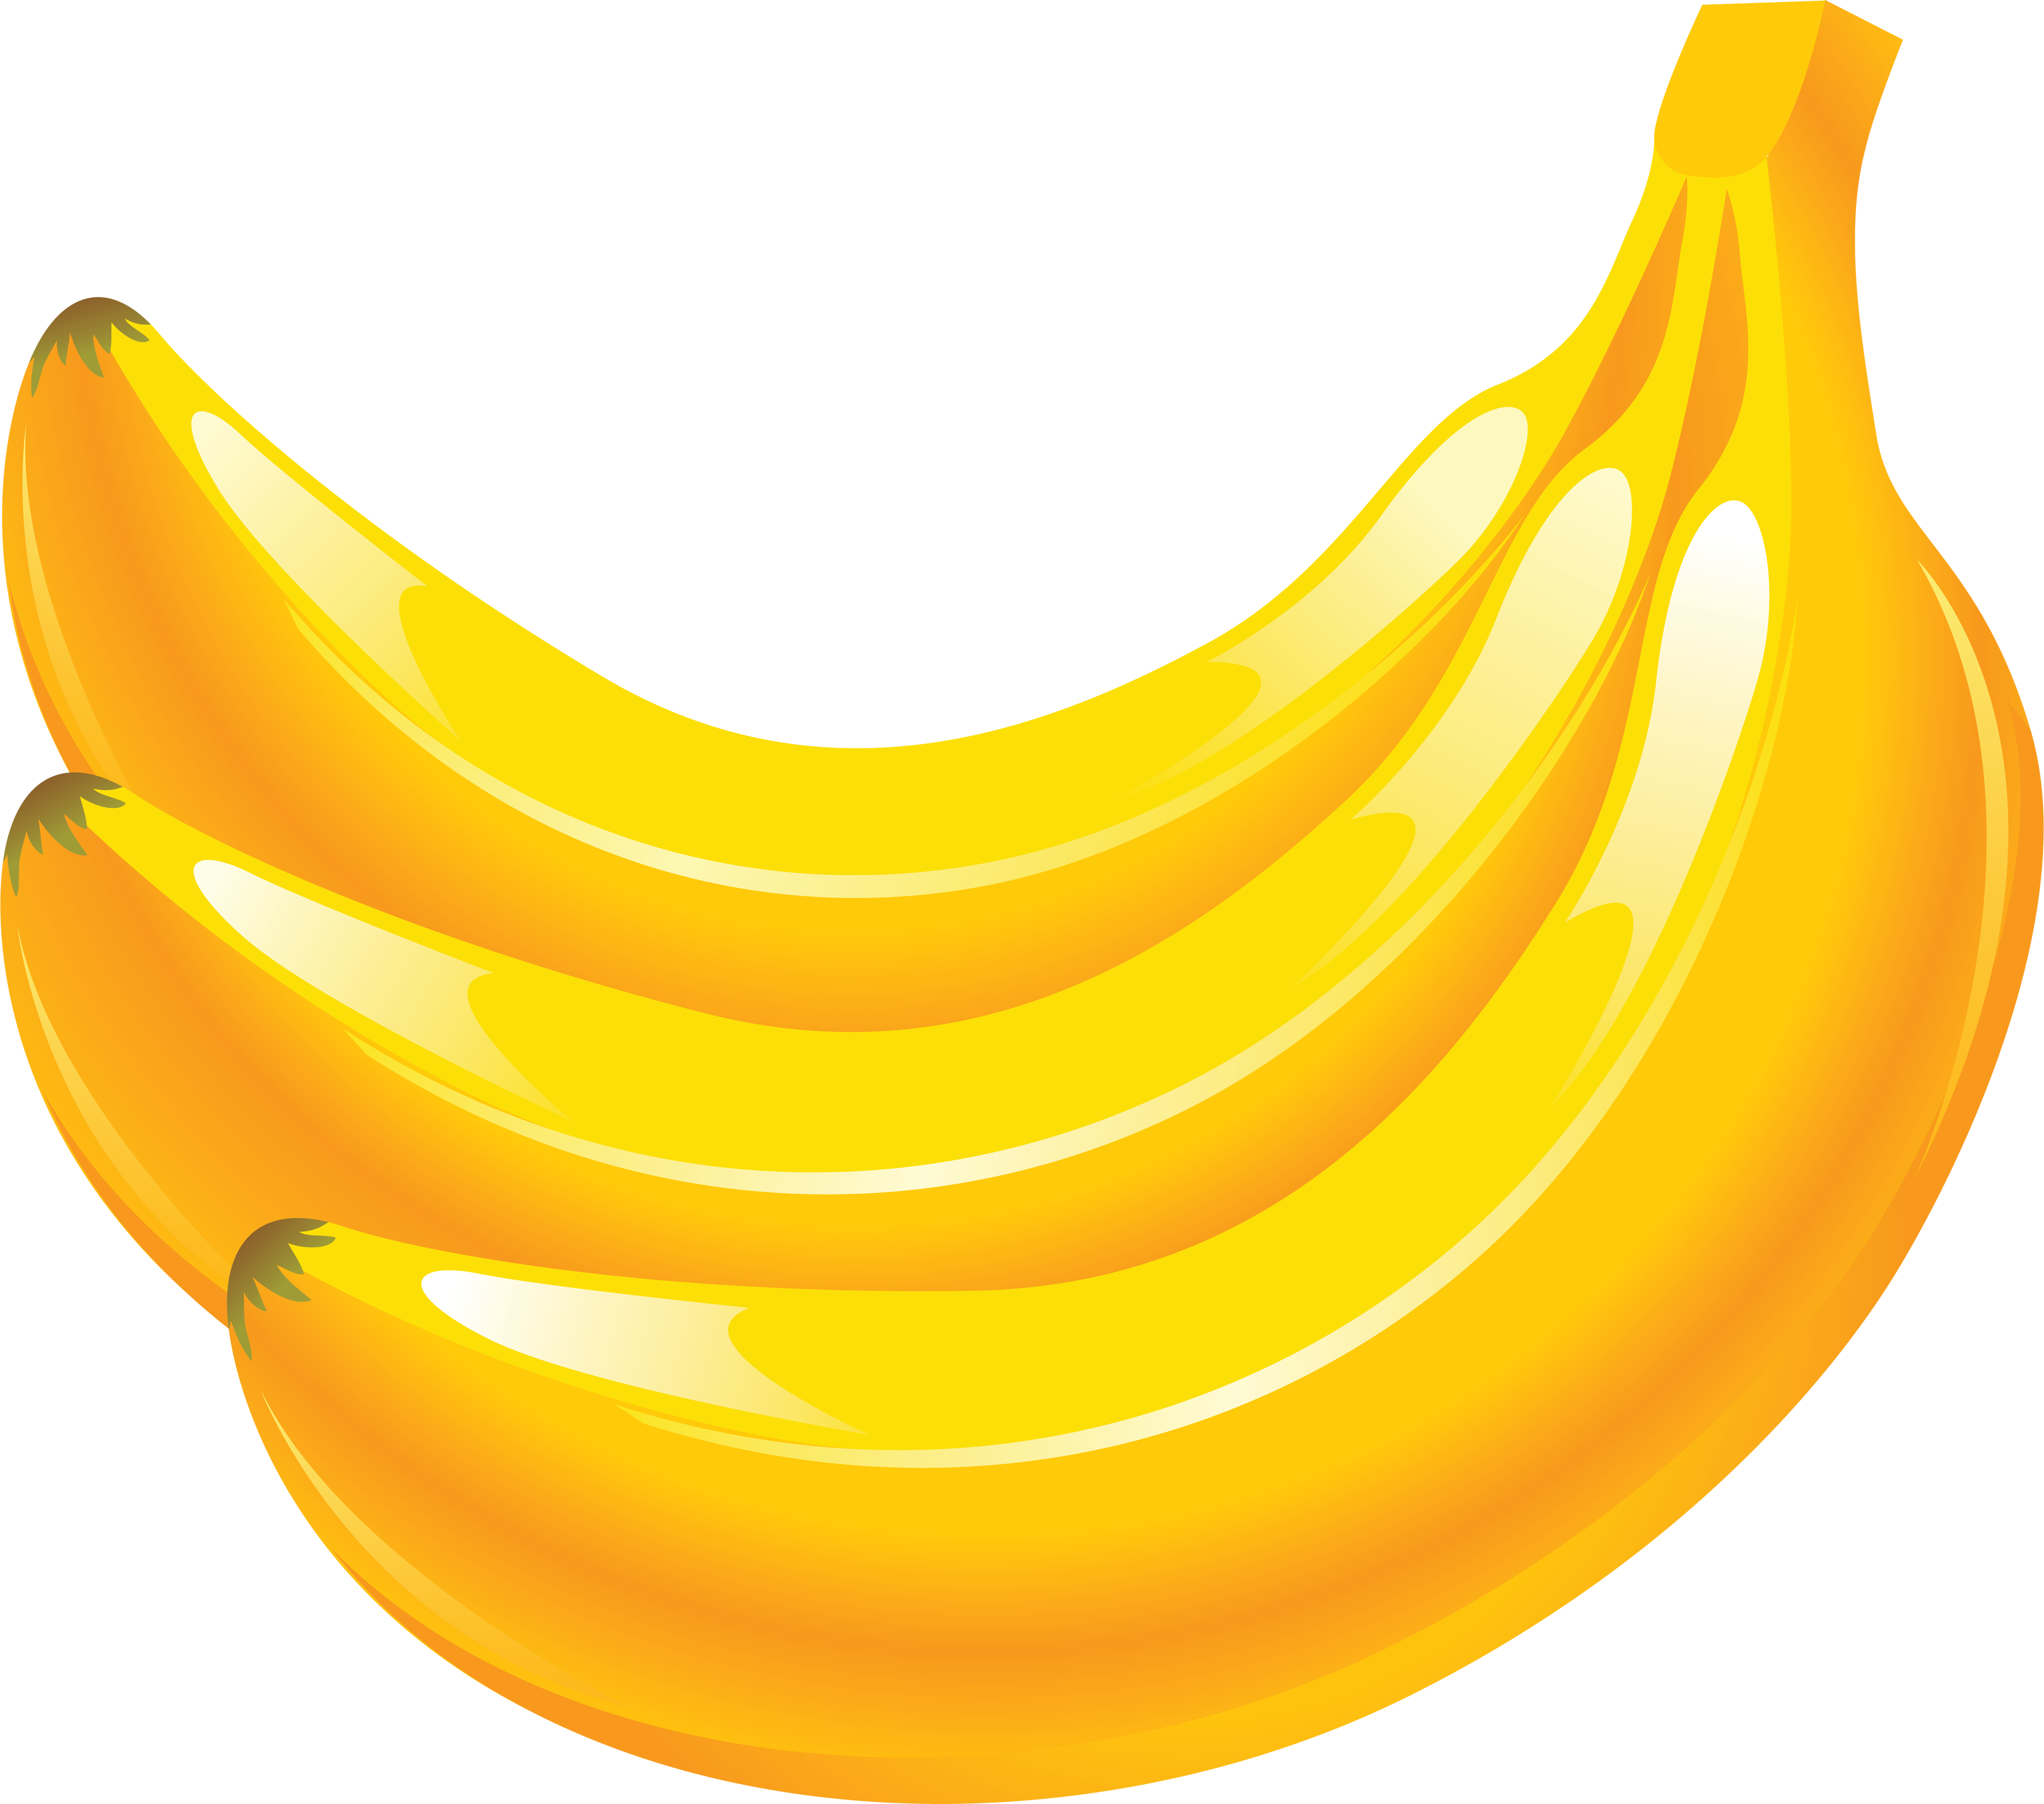 Yellow Bananas Png Image - Banana, Transparent background PNG HD thumbnail